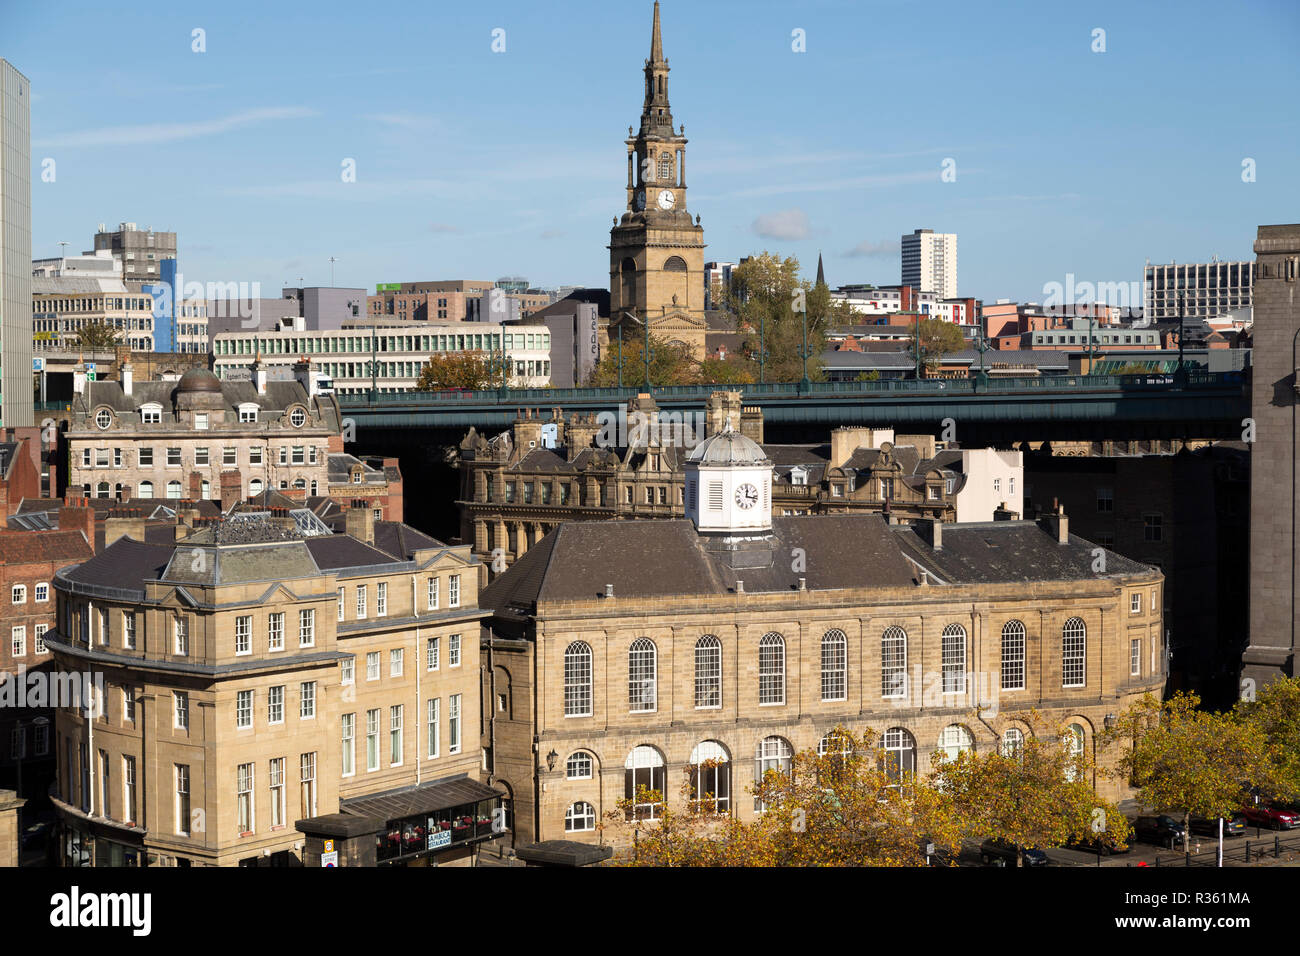 Die Guildhall in Newcastle upon Tyne, England. Das städtische Gebäude ein Gericht und Rat Kammern. Stockfoto